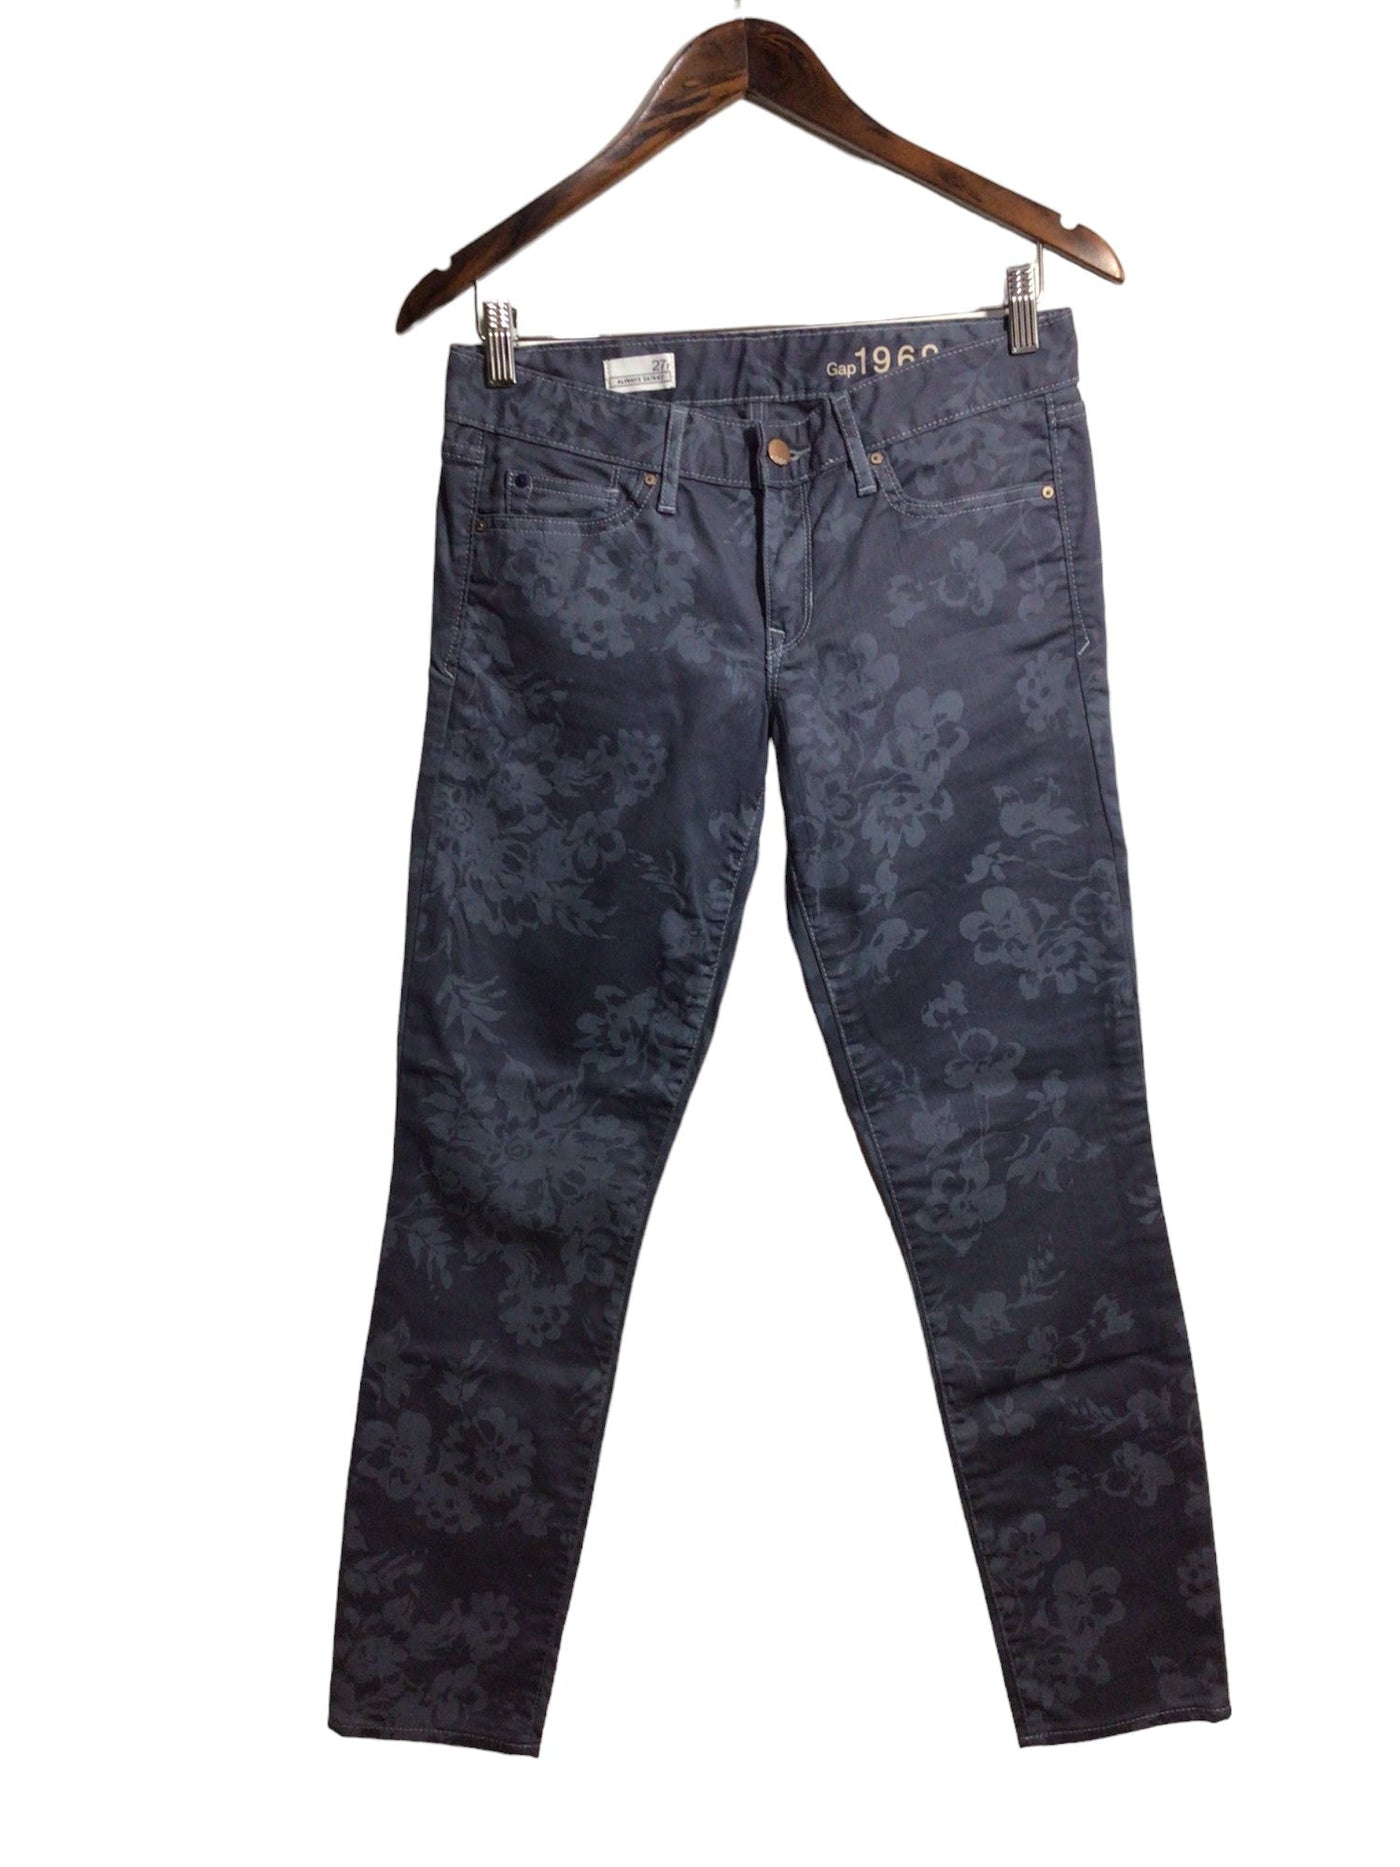 GAP Women Straight-Legged Jeans Regular fit in Gray - Size 27 | 11.25 $ KOOP